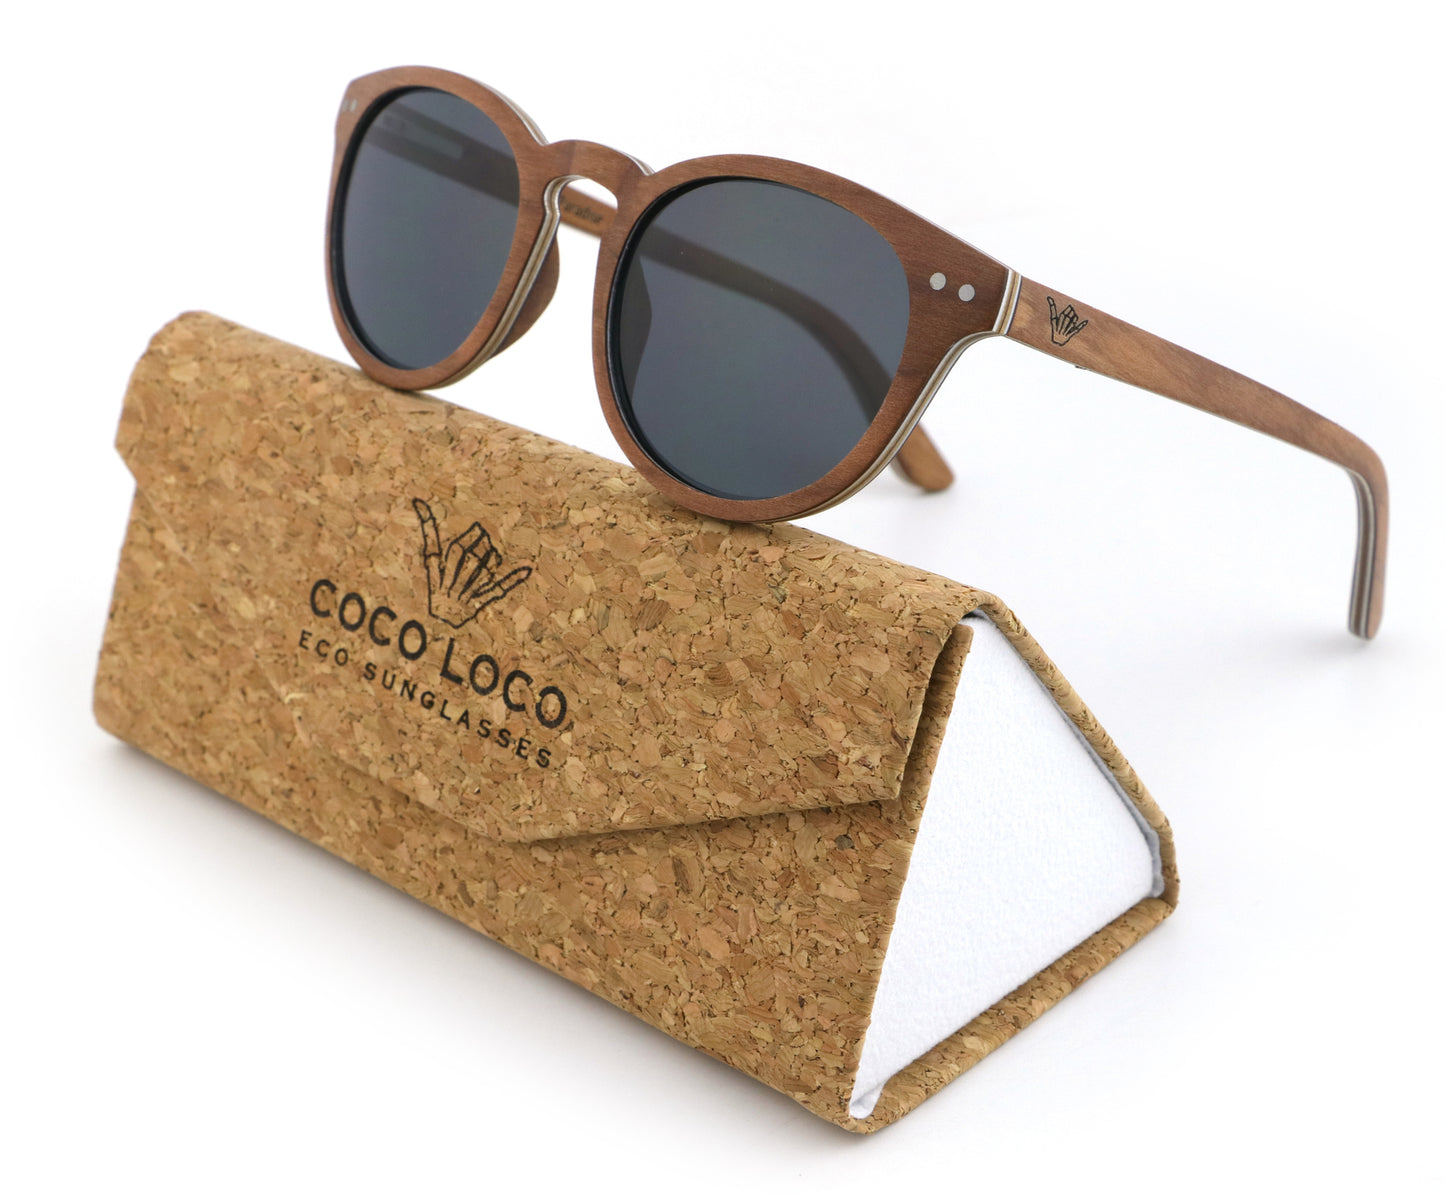 Fortuna Brown Coco Loco wooden eco sunglasses with cork case